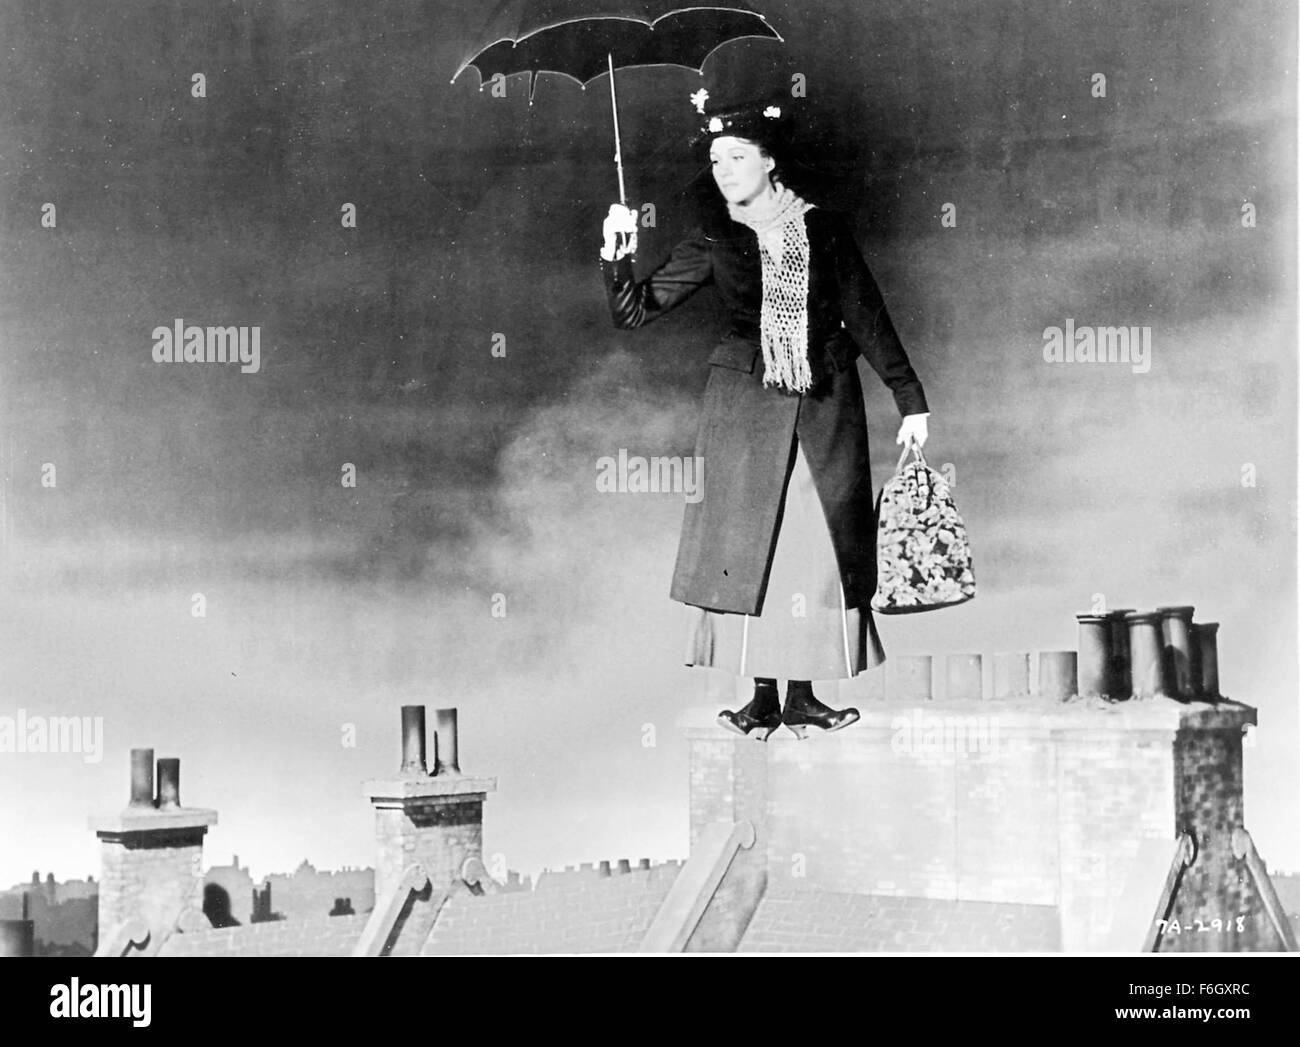 Sep 11, 2001 ; Los Angeles, CA, USA ; l'actrice Julie Andrews stars comme Mary Poppins dans le 1964 film "Mary Popins' réalisé par Robert Stevenson. Banque D'Images